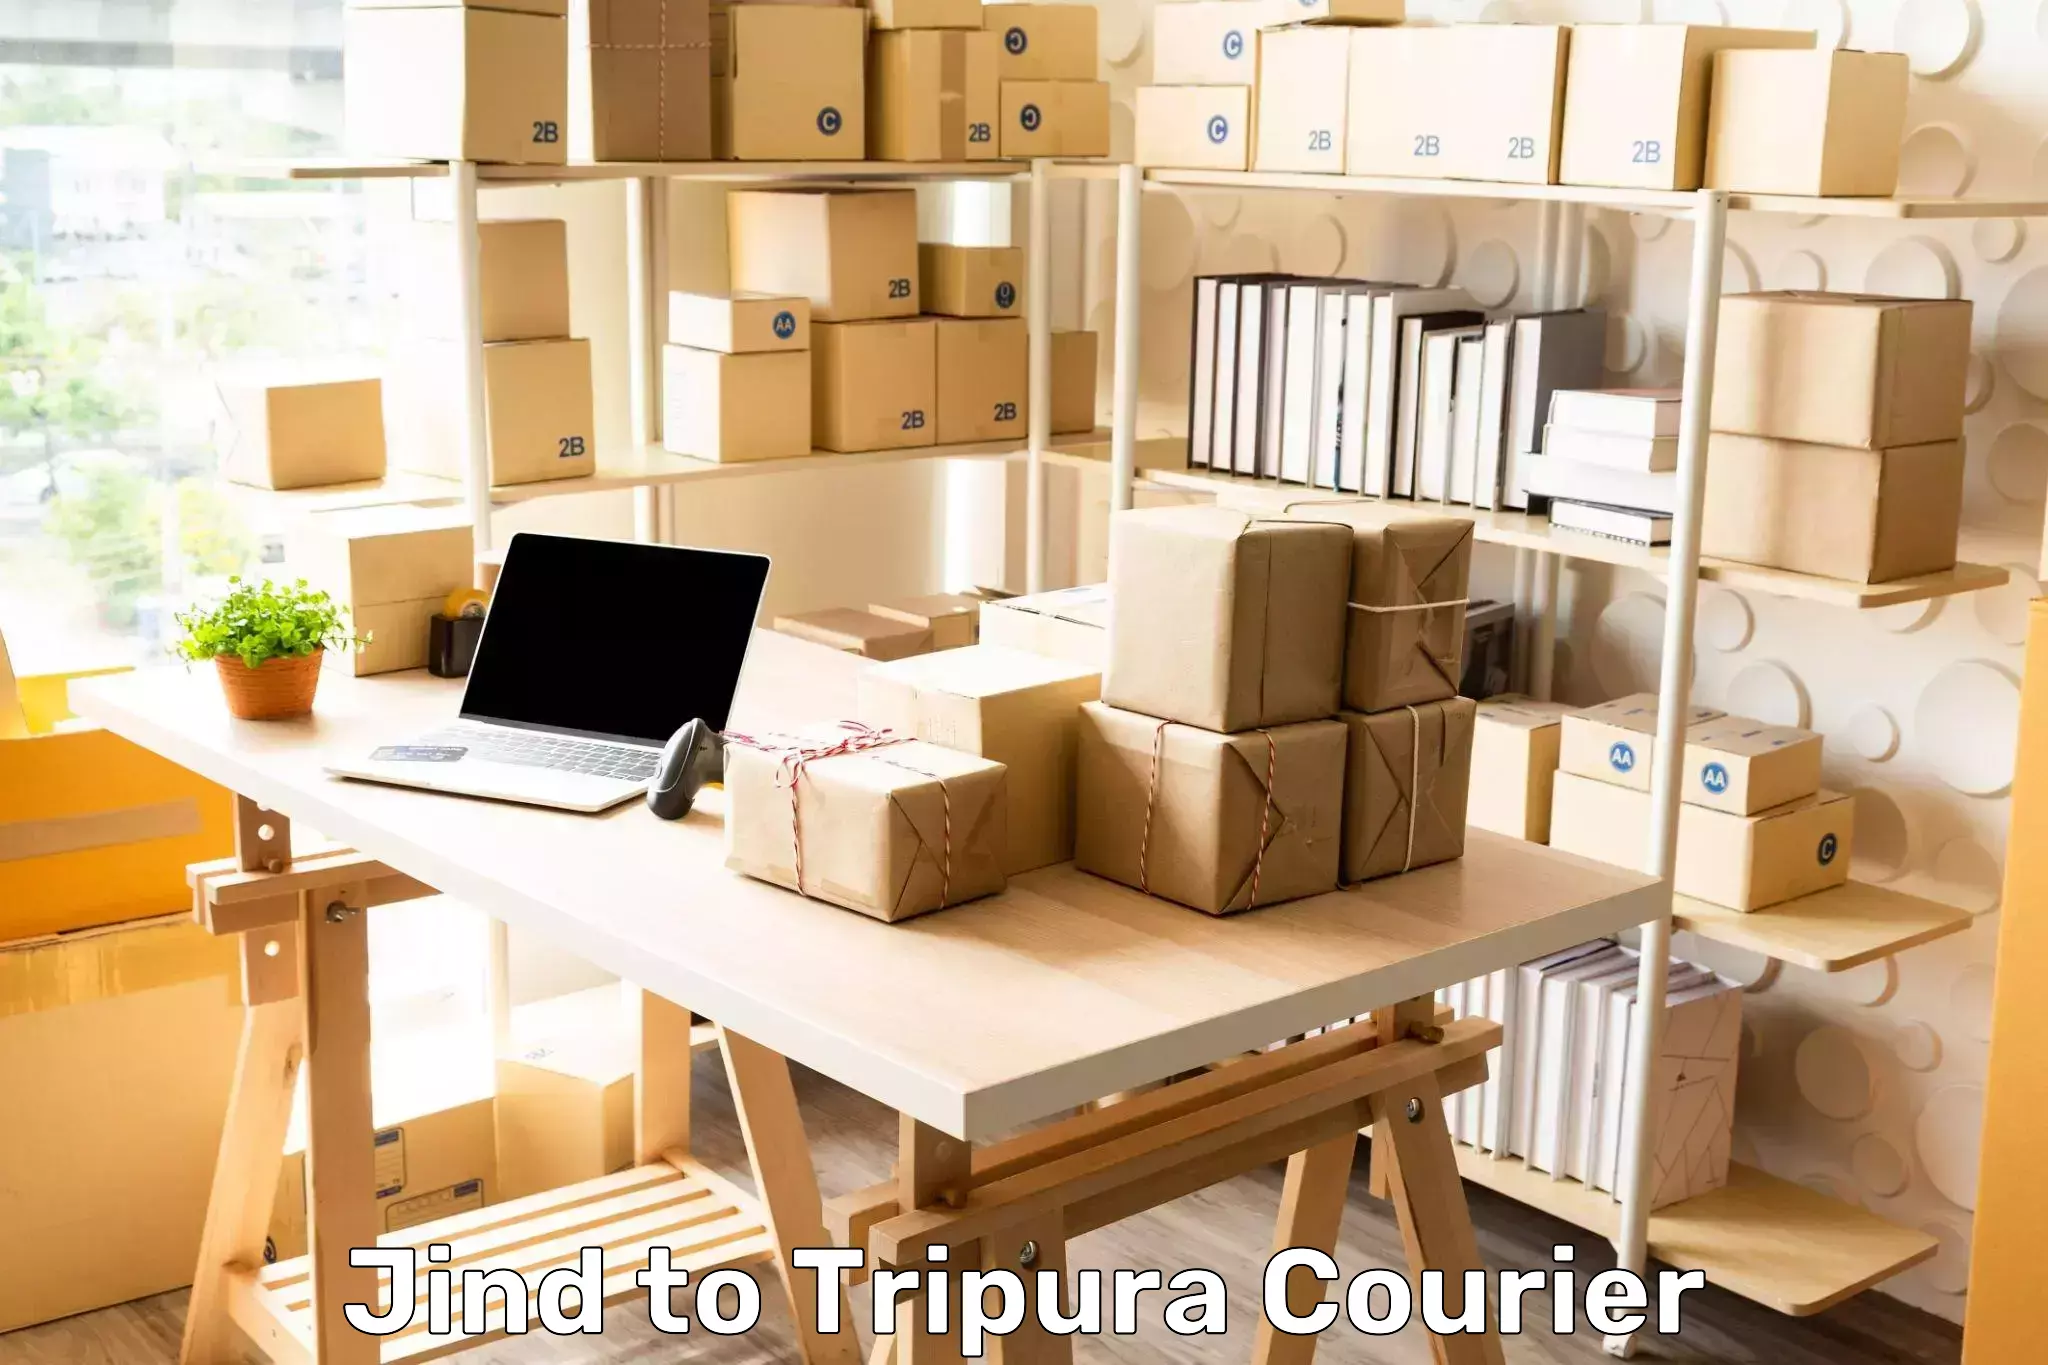 Express logistics providers Jind to Kamalpur